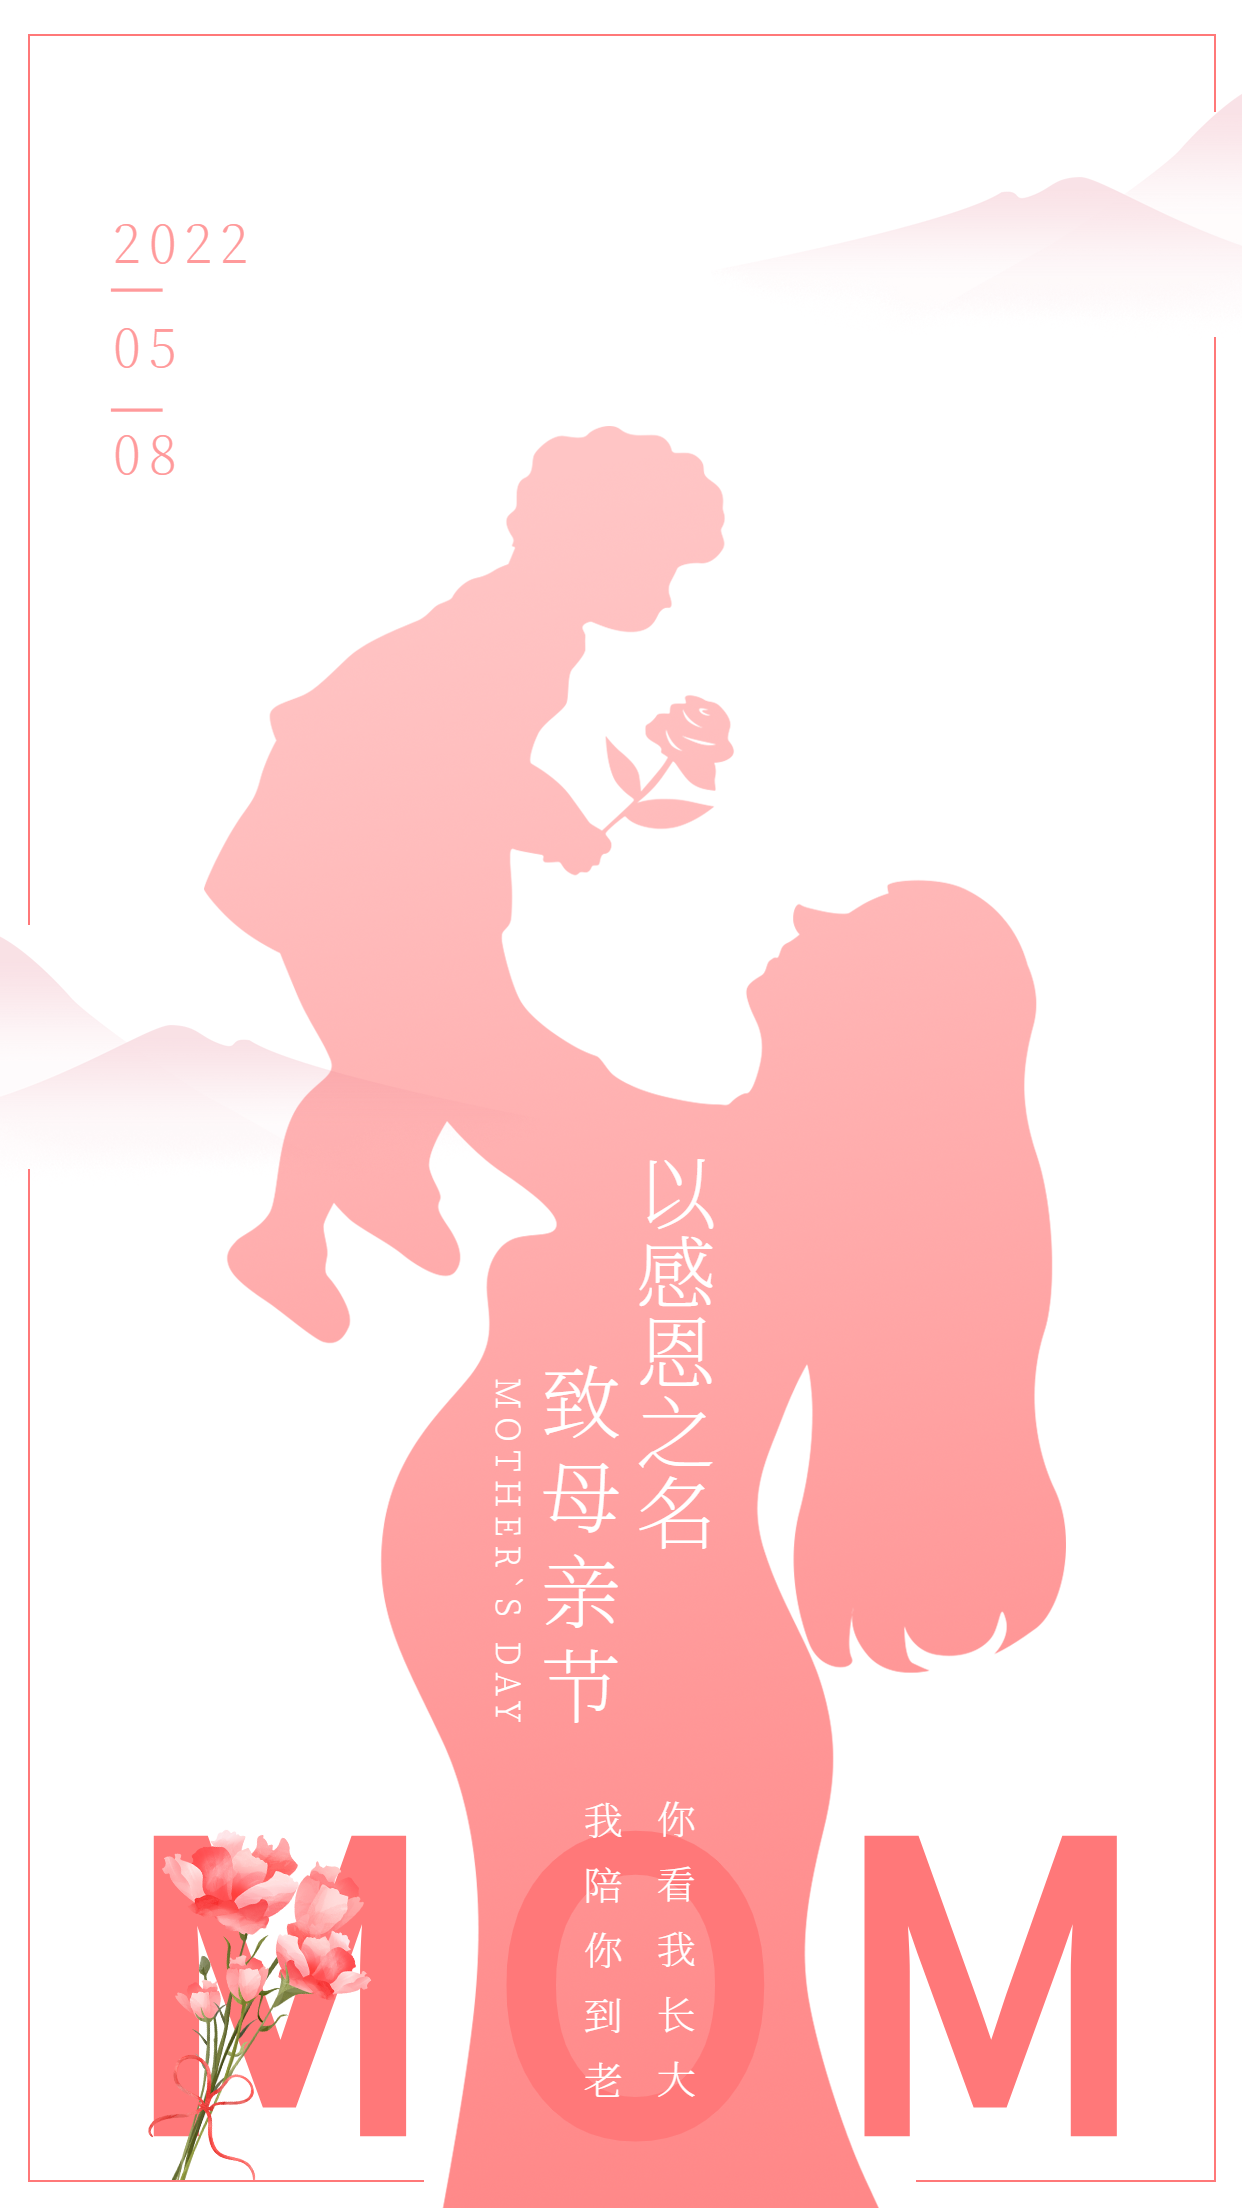 微商母亲节节日祝福人物晒照手机海报_图片模板素材-稿定设计